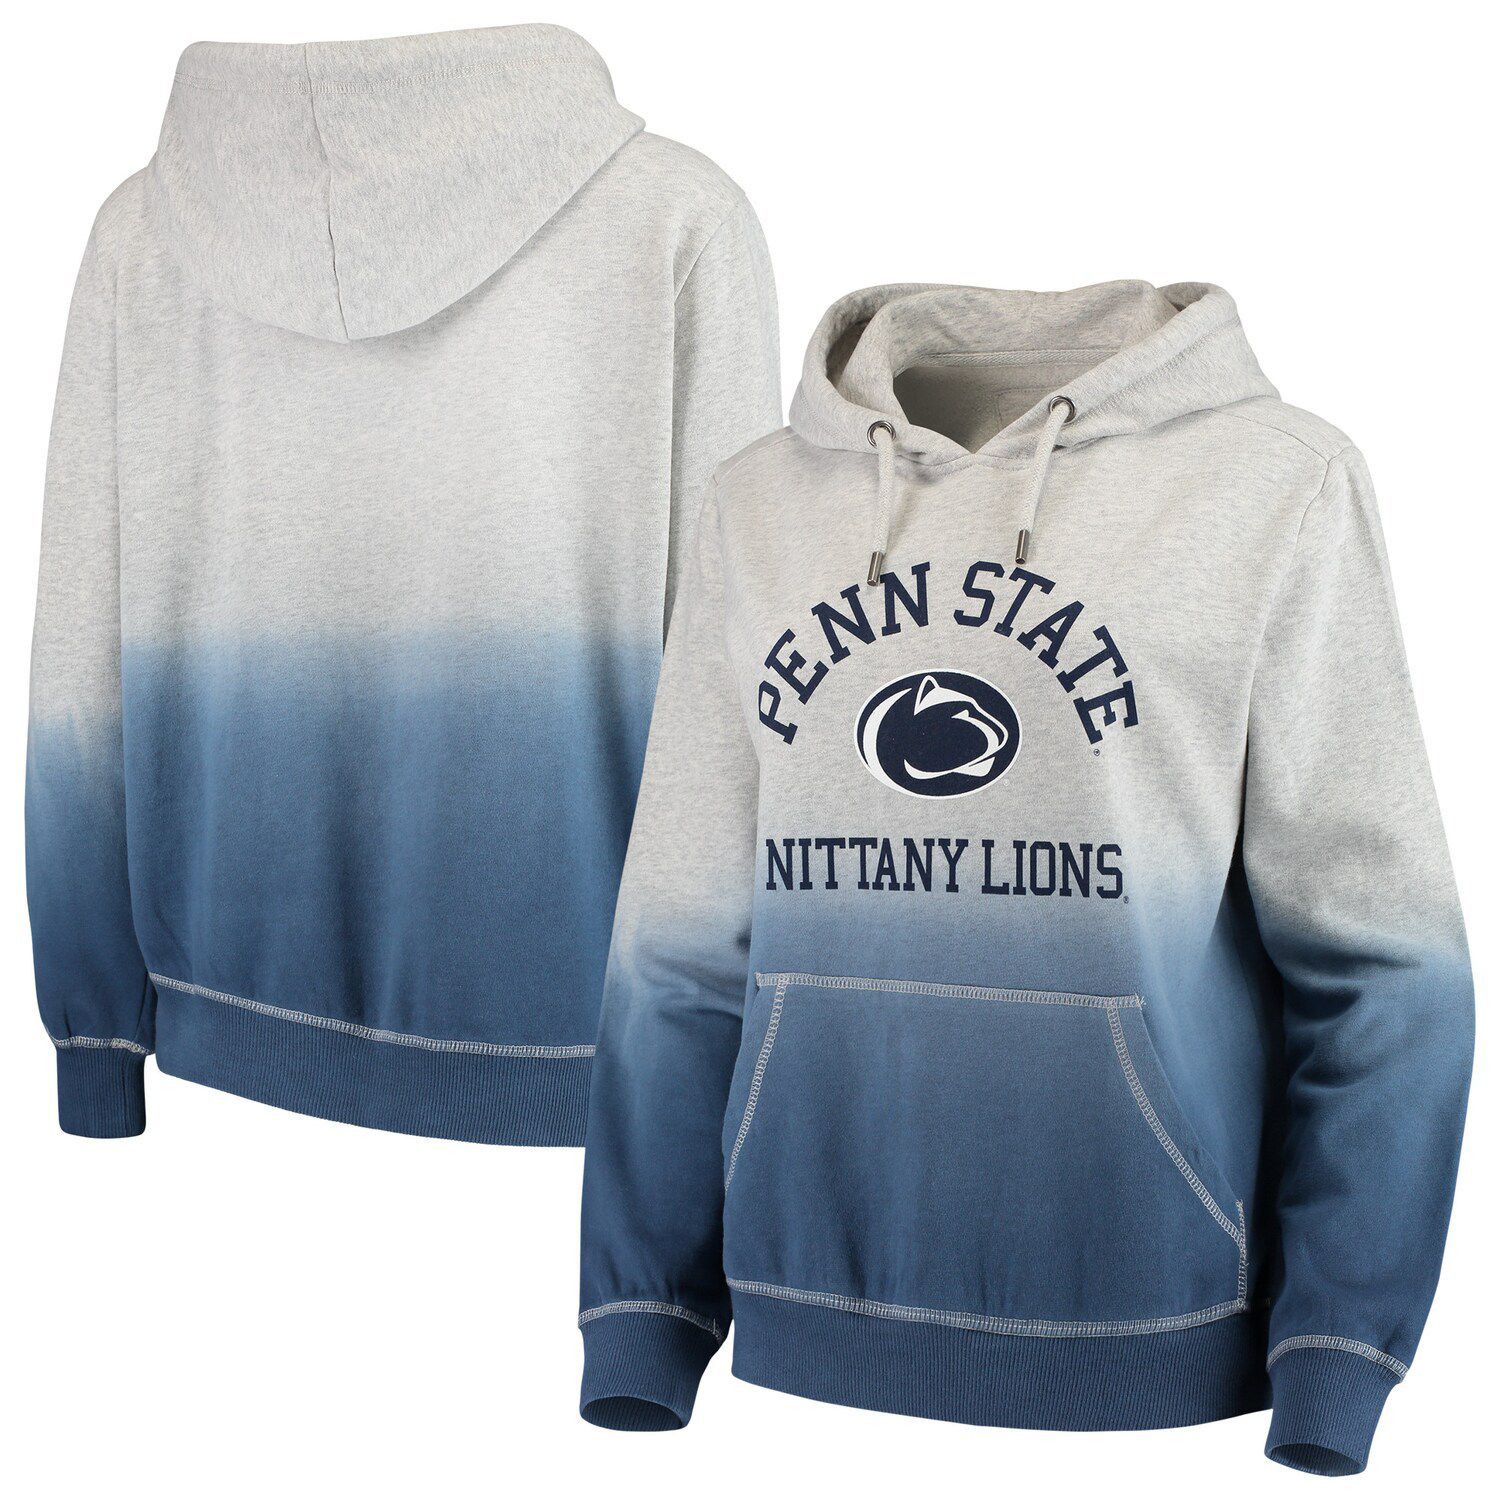 penn state women's zip up hoodie